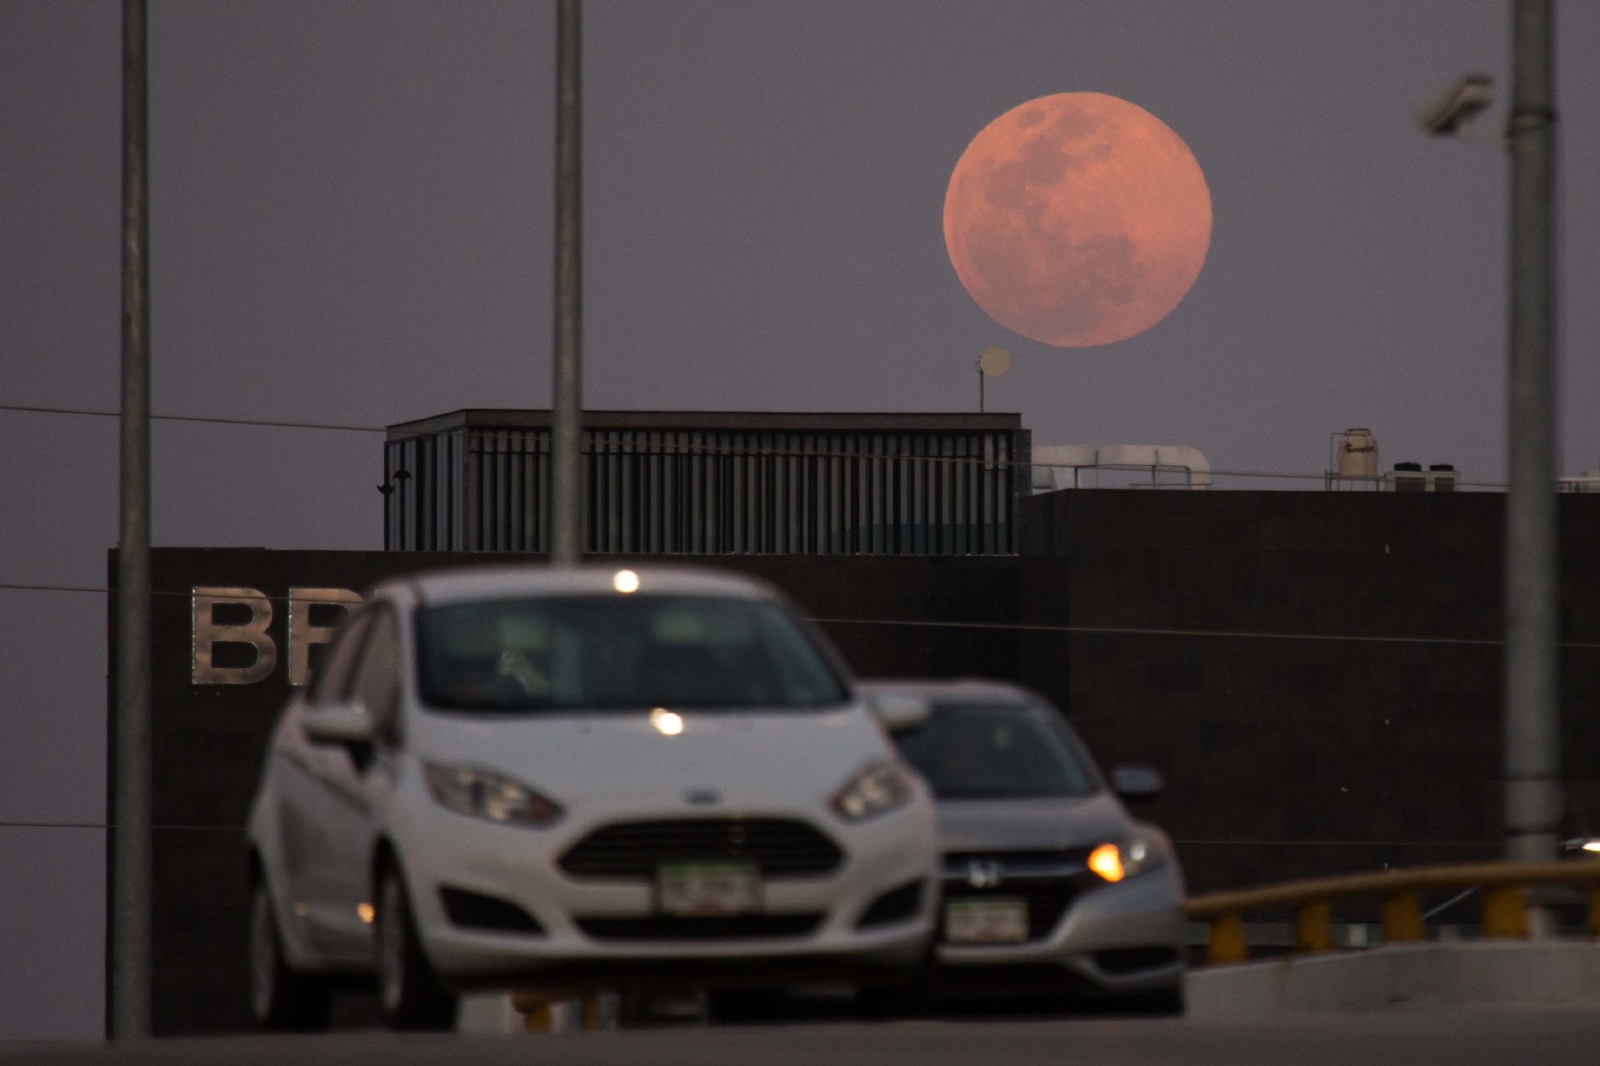 Eclipses lunares se podrán ver en Yucatán, experto confirma nuevos eventos astronómicos